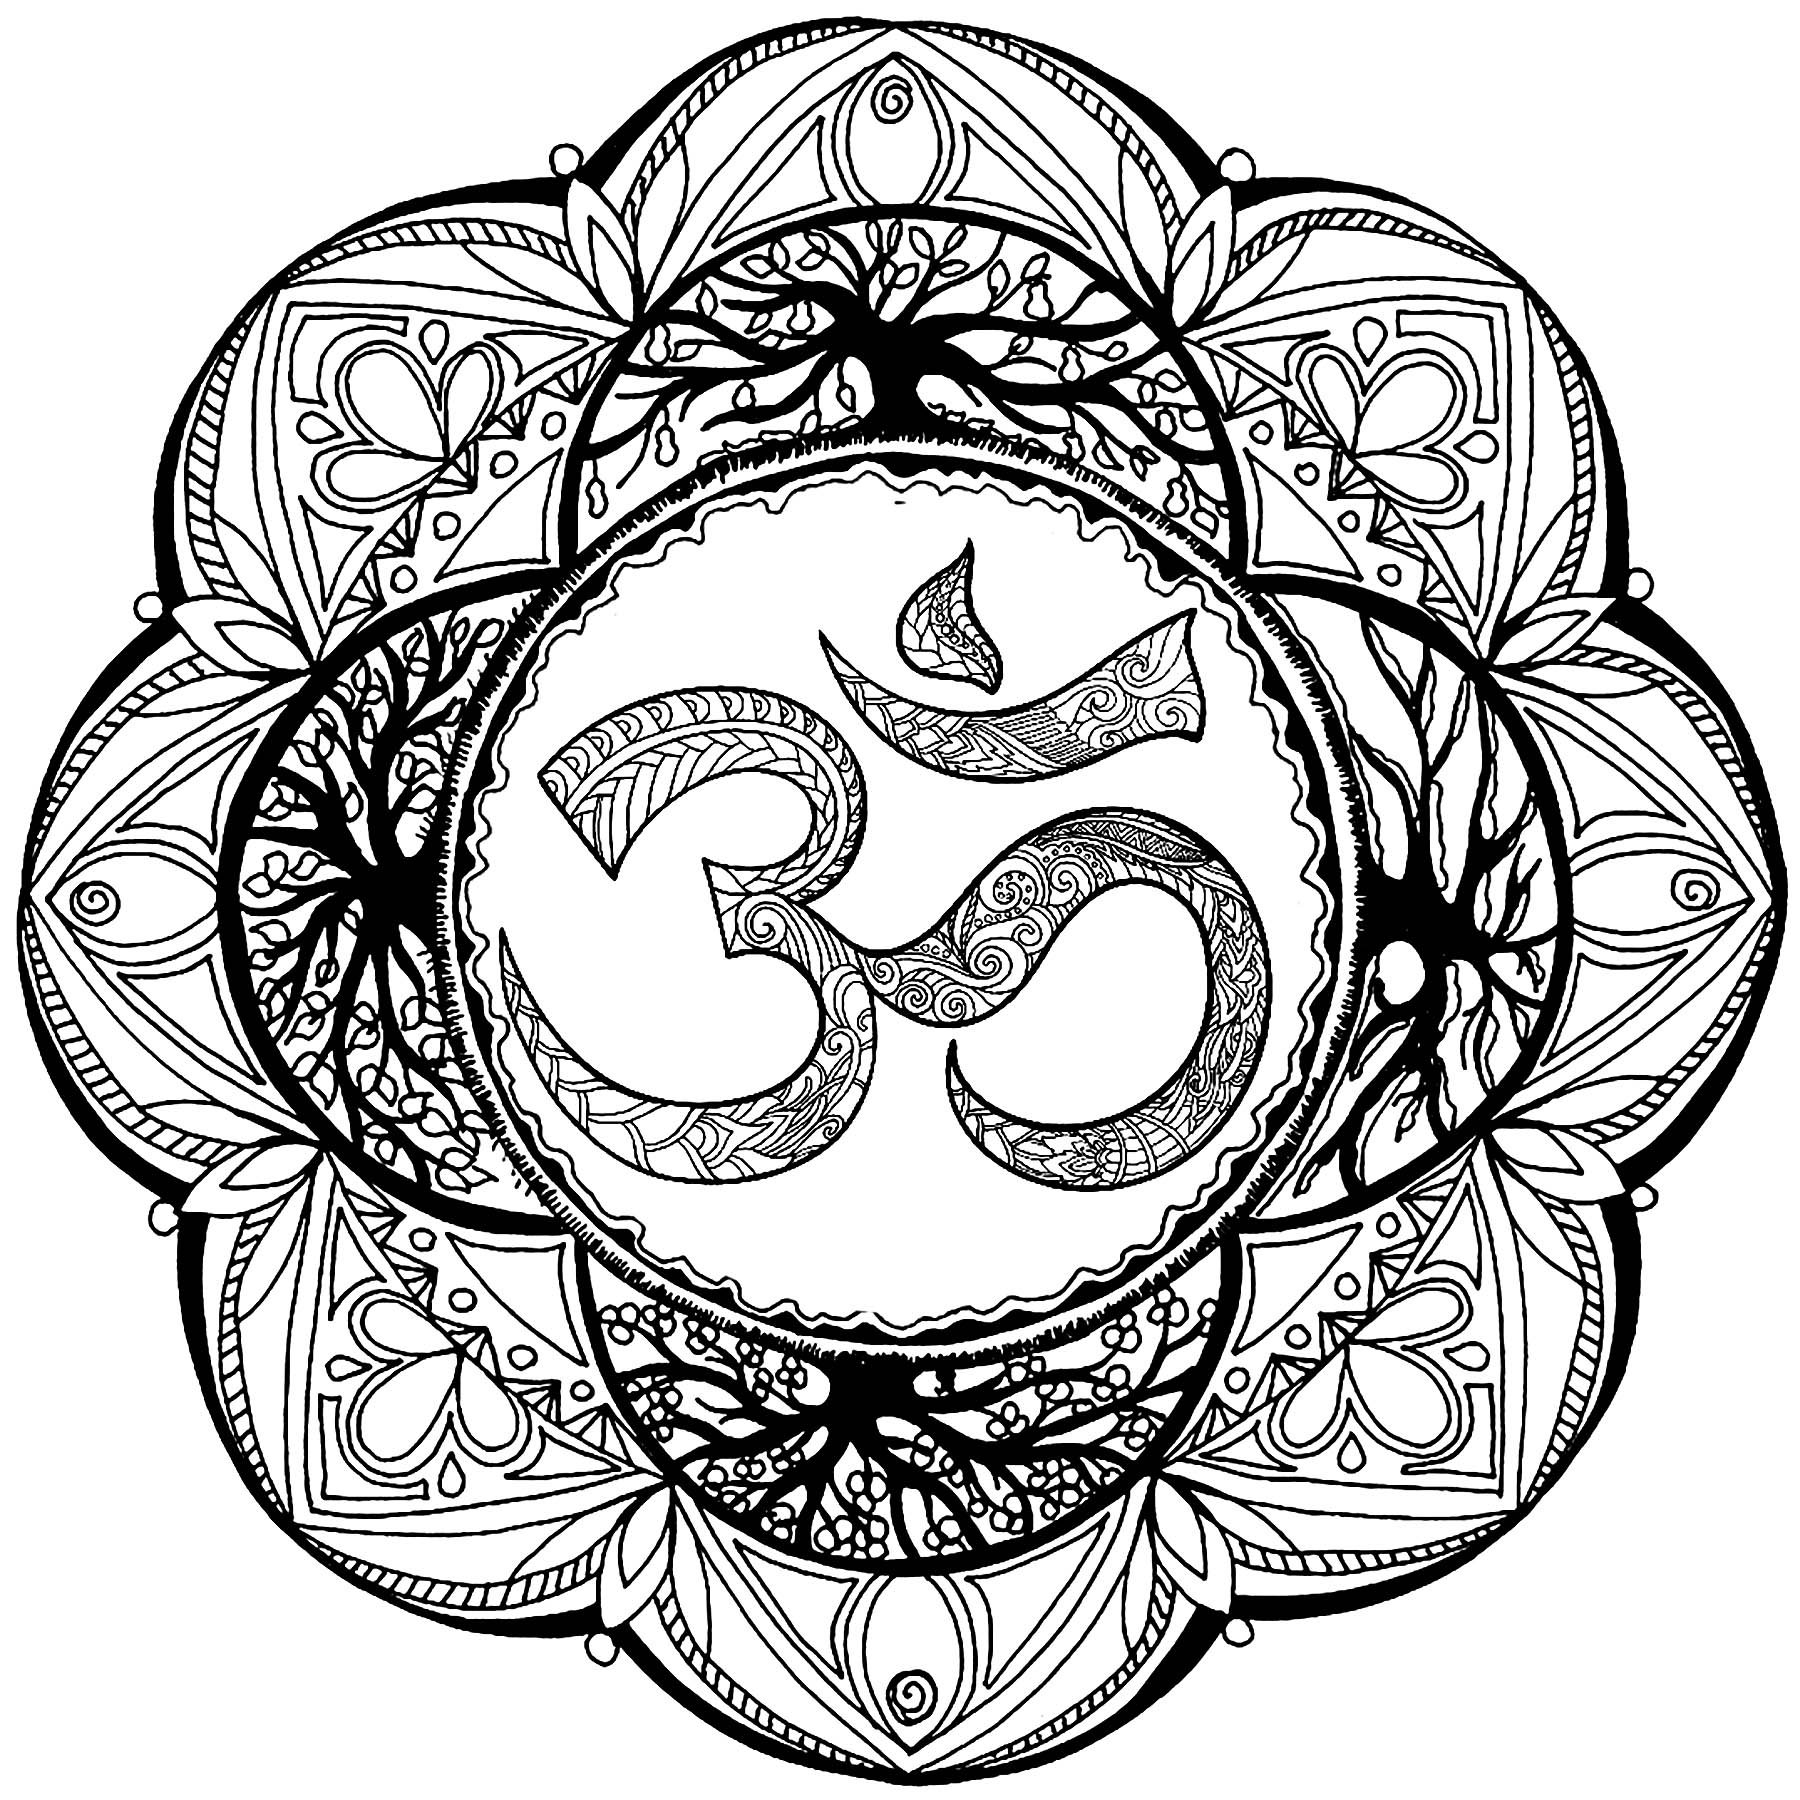 Mandala com muitos pormenores e o símbolo Om no centro